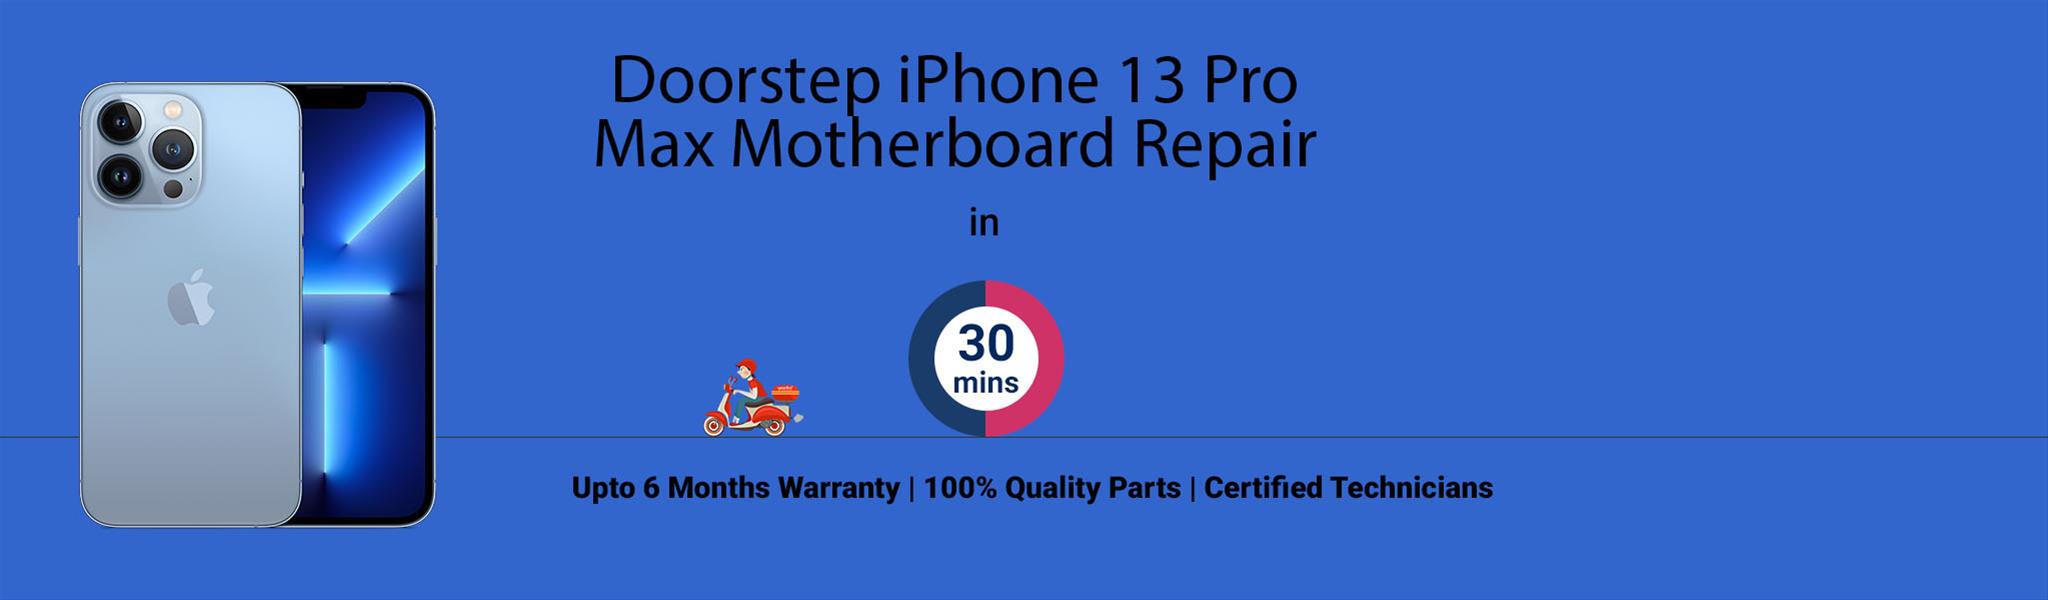 iphone-13-pro-max-motherboard-repair.jpg